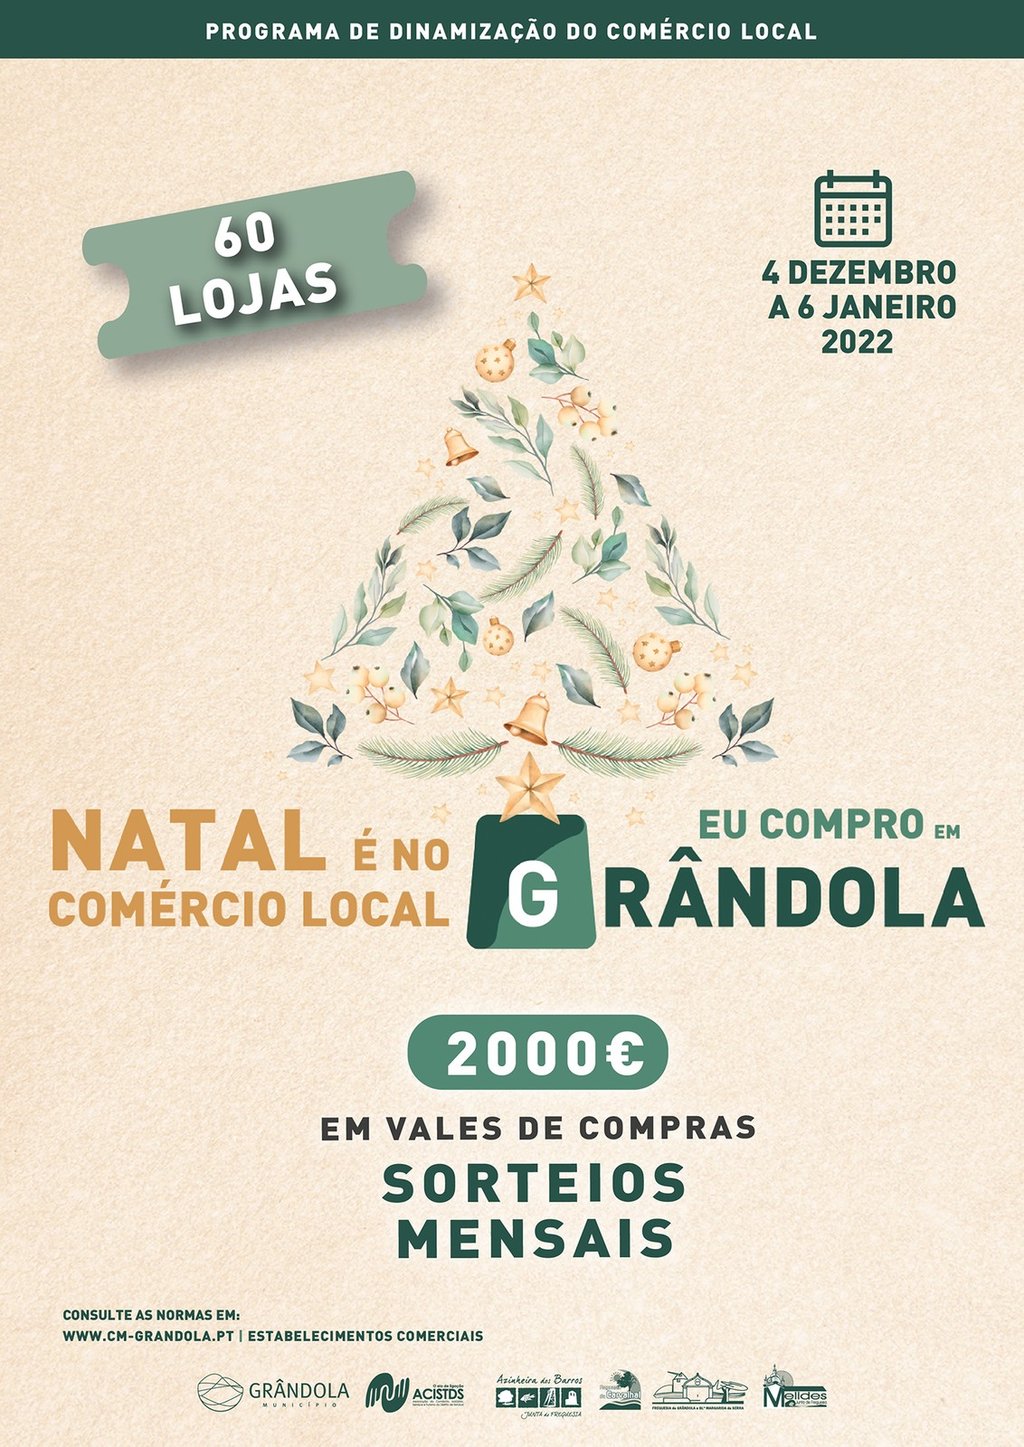 Eu Compro em Grândola | Natal é no comércio Local arranca no próximo sábado com a adesão de 60 lojas